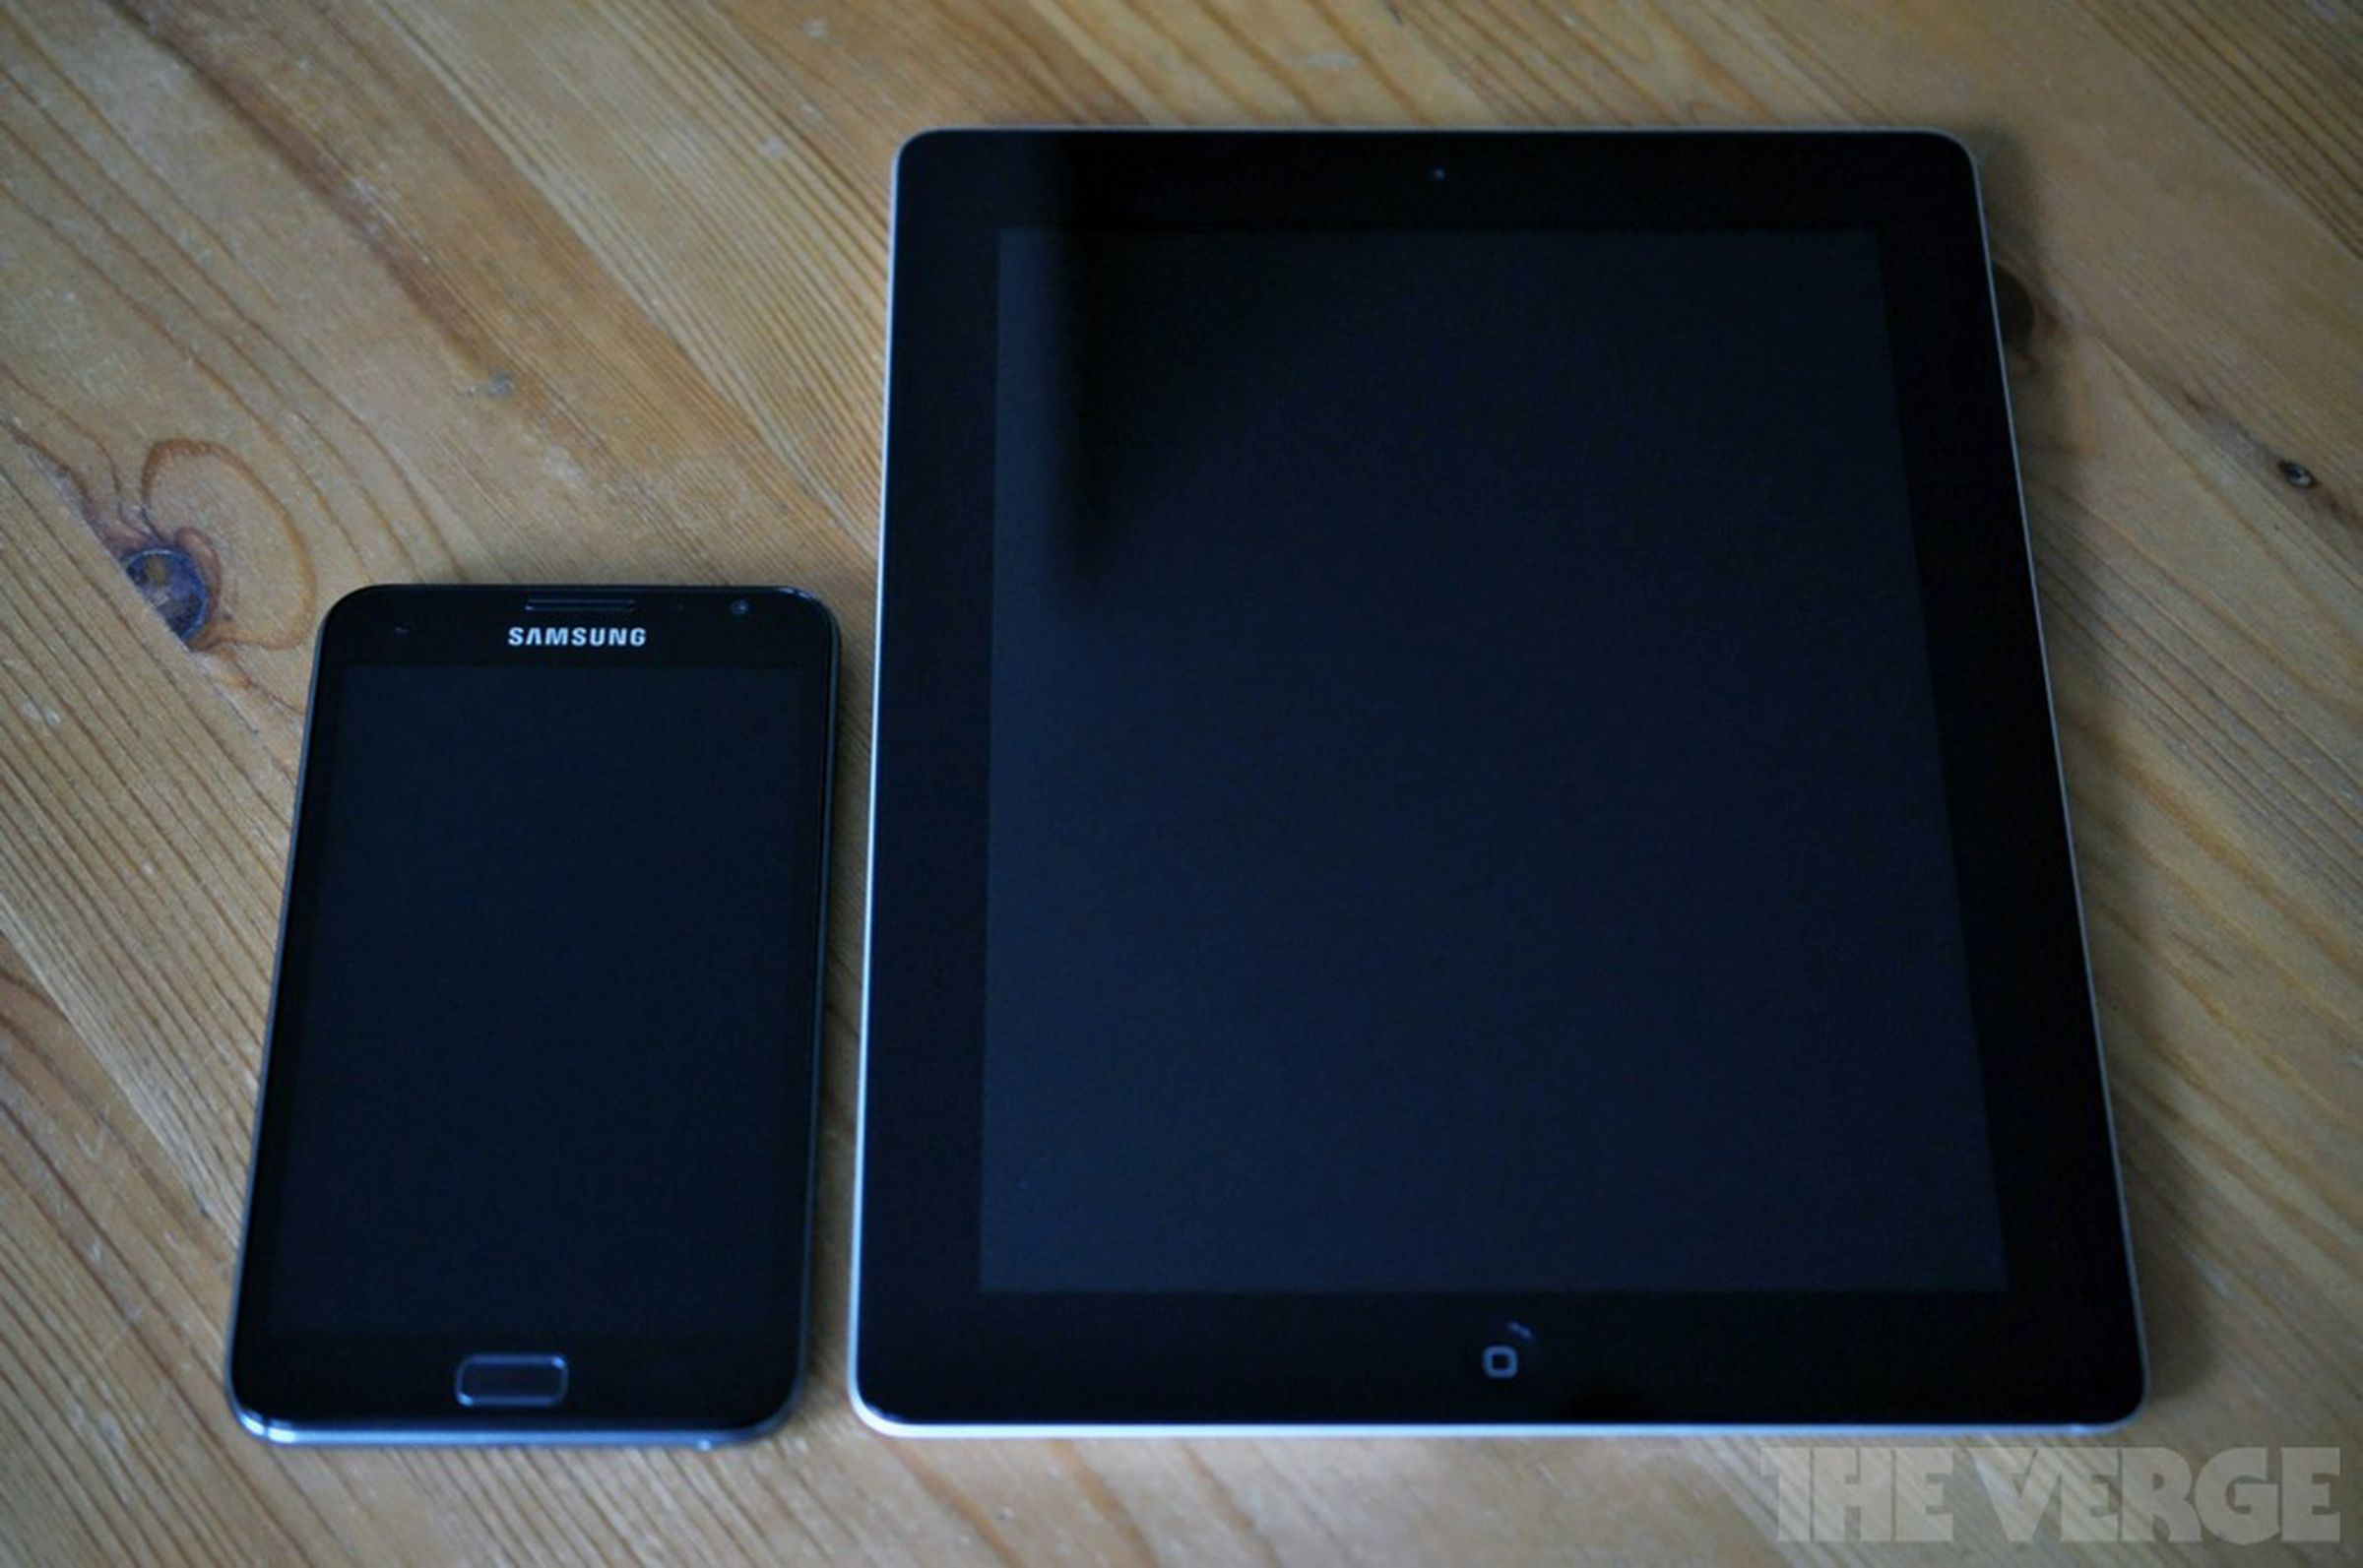 Samsung Galaxy Note size comparison